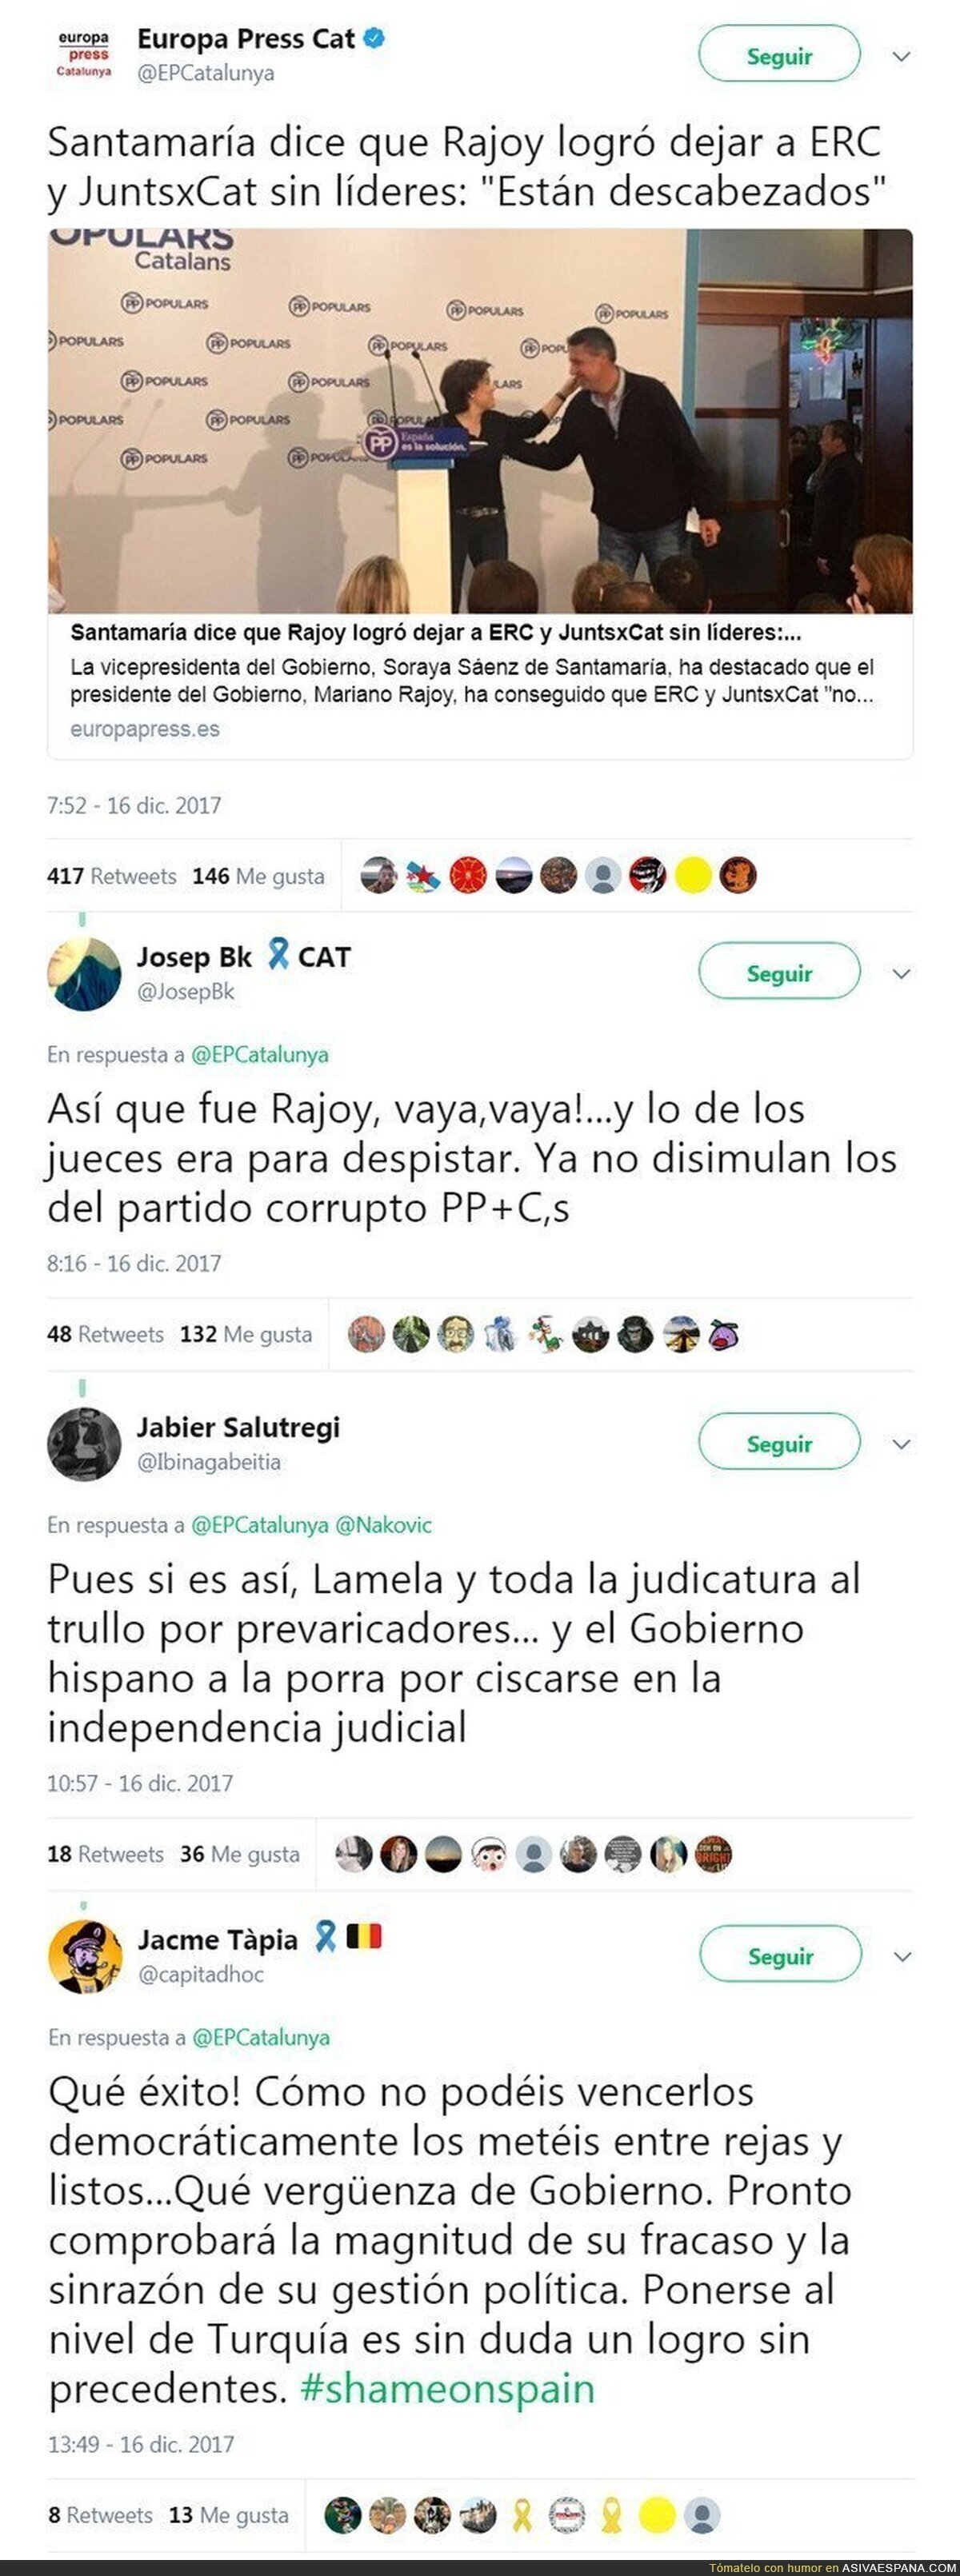 Santamaría deja claro que fue el PP y Rajoy quienes se encargaron de dejar sin líderes a Erc y JuntxCat